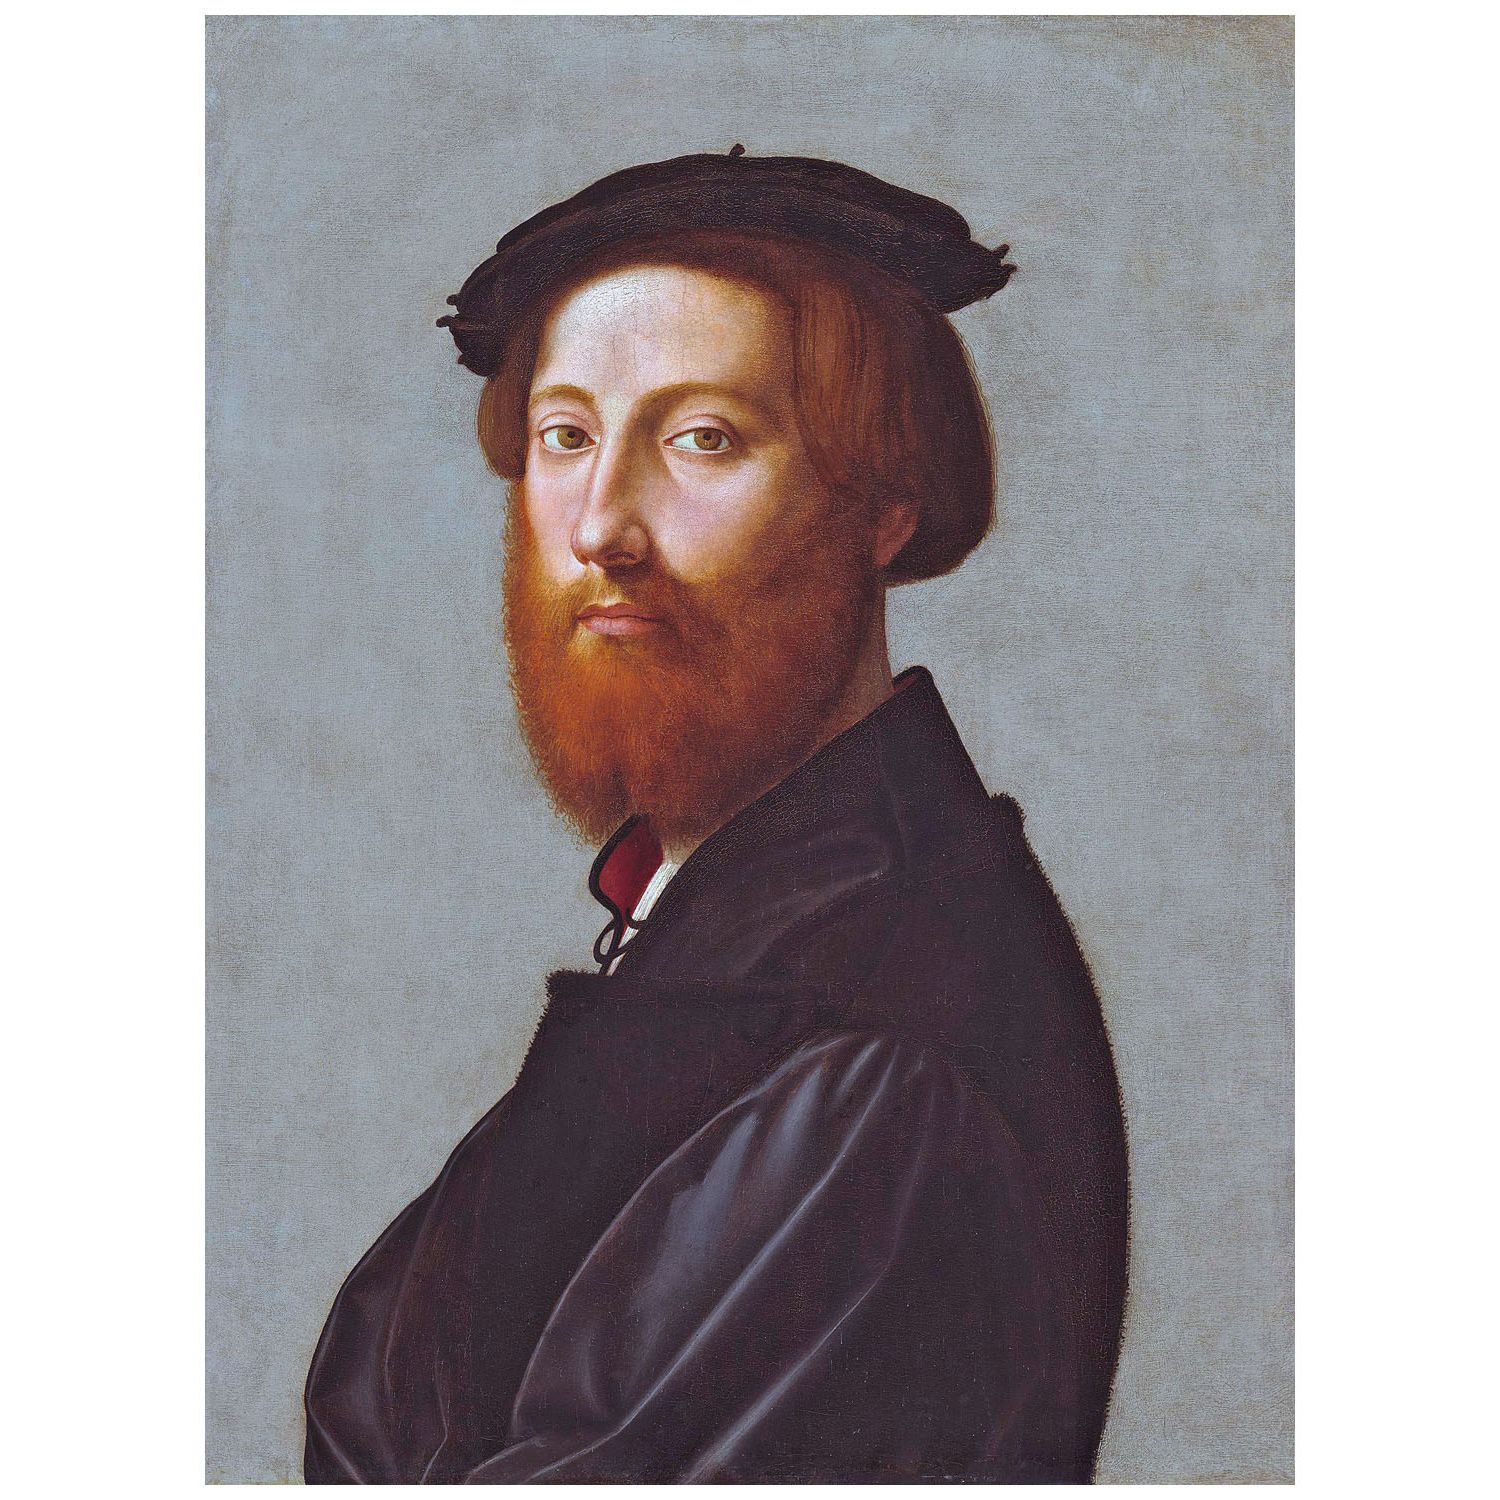 Giuliano Bugiardini. Leonardo de' Ginori. 1528. NGA Washington